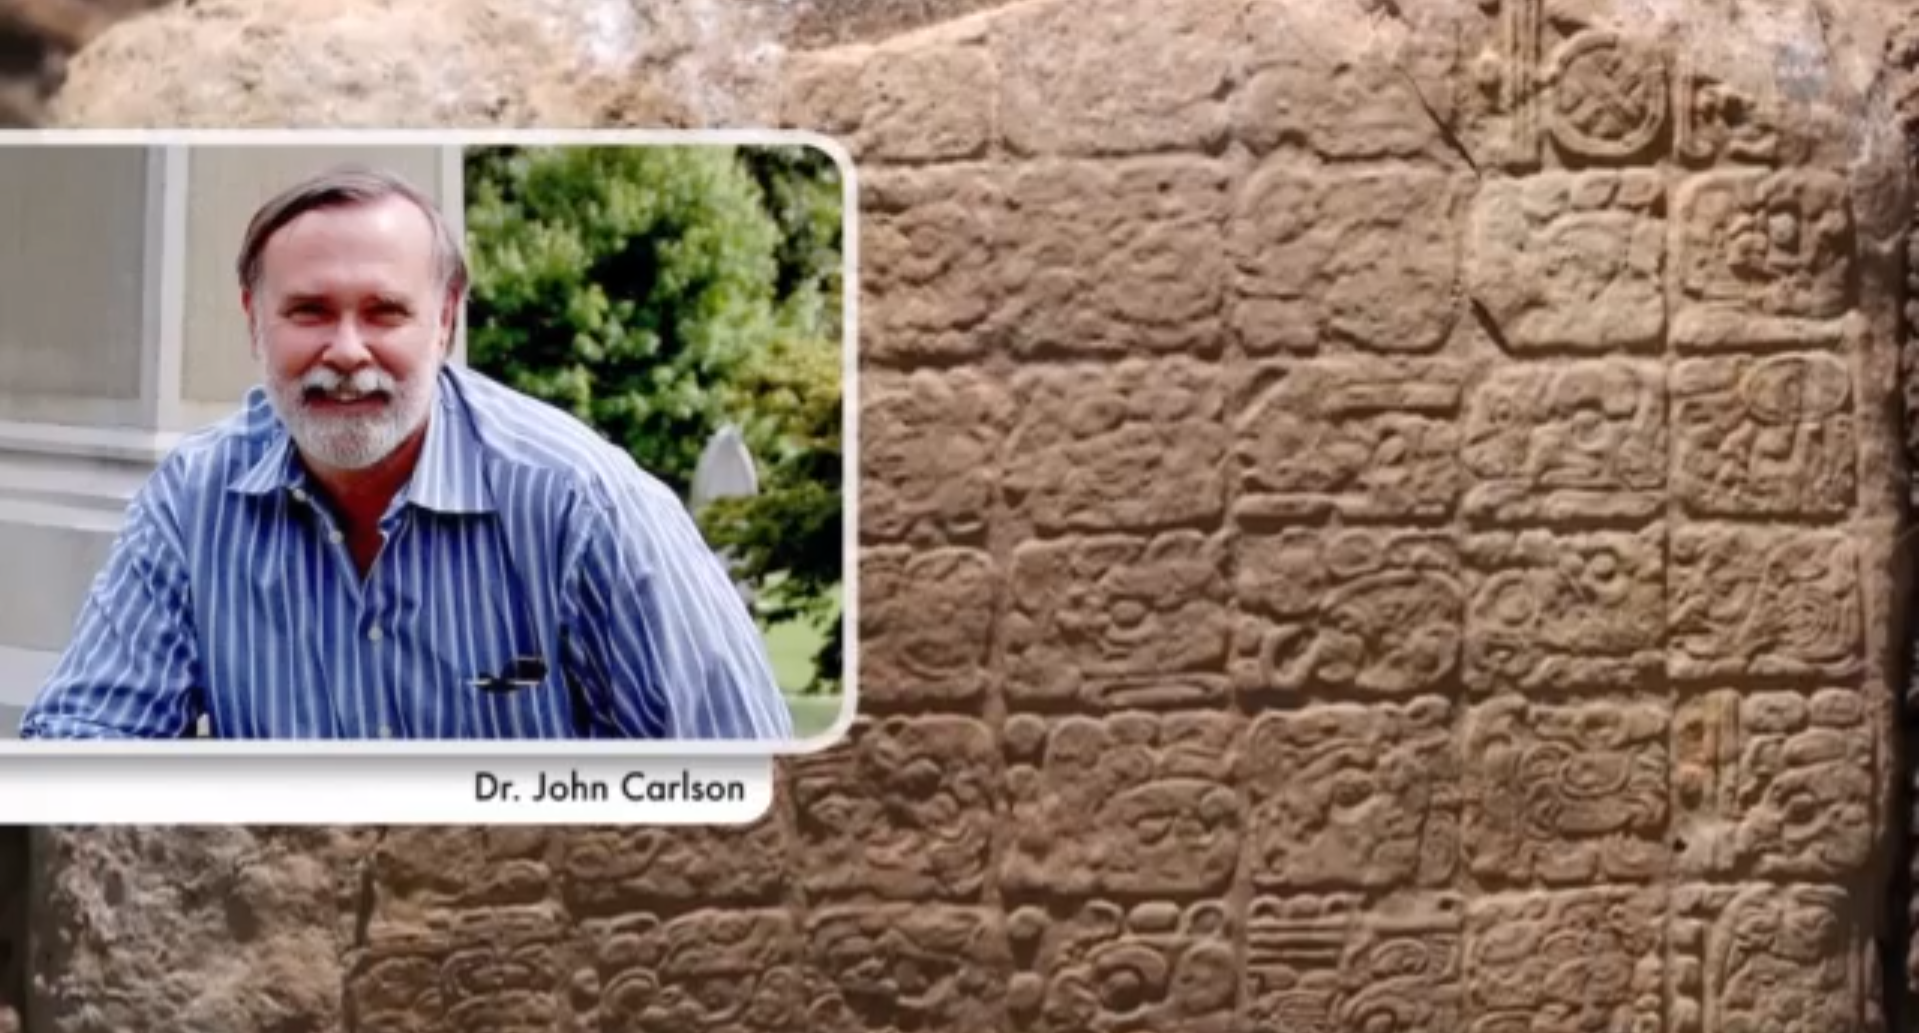 Dr. John Carlson som forskat om mayafolkets kultur i 35 år medverkar i videon.